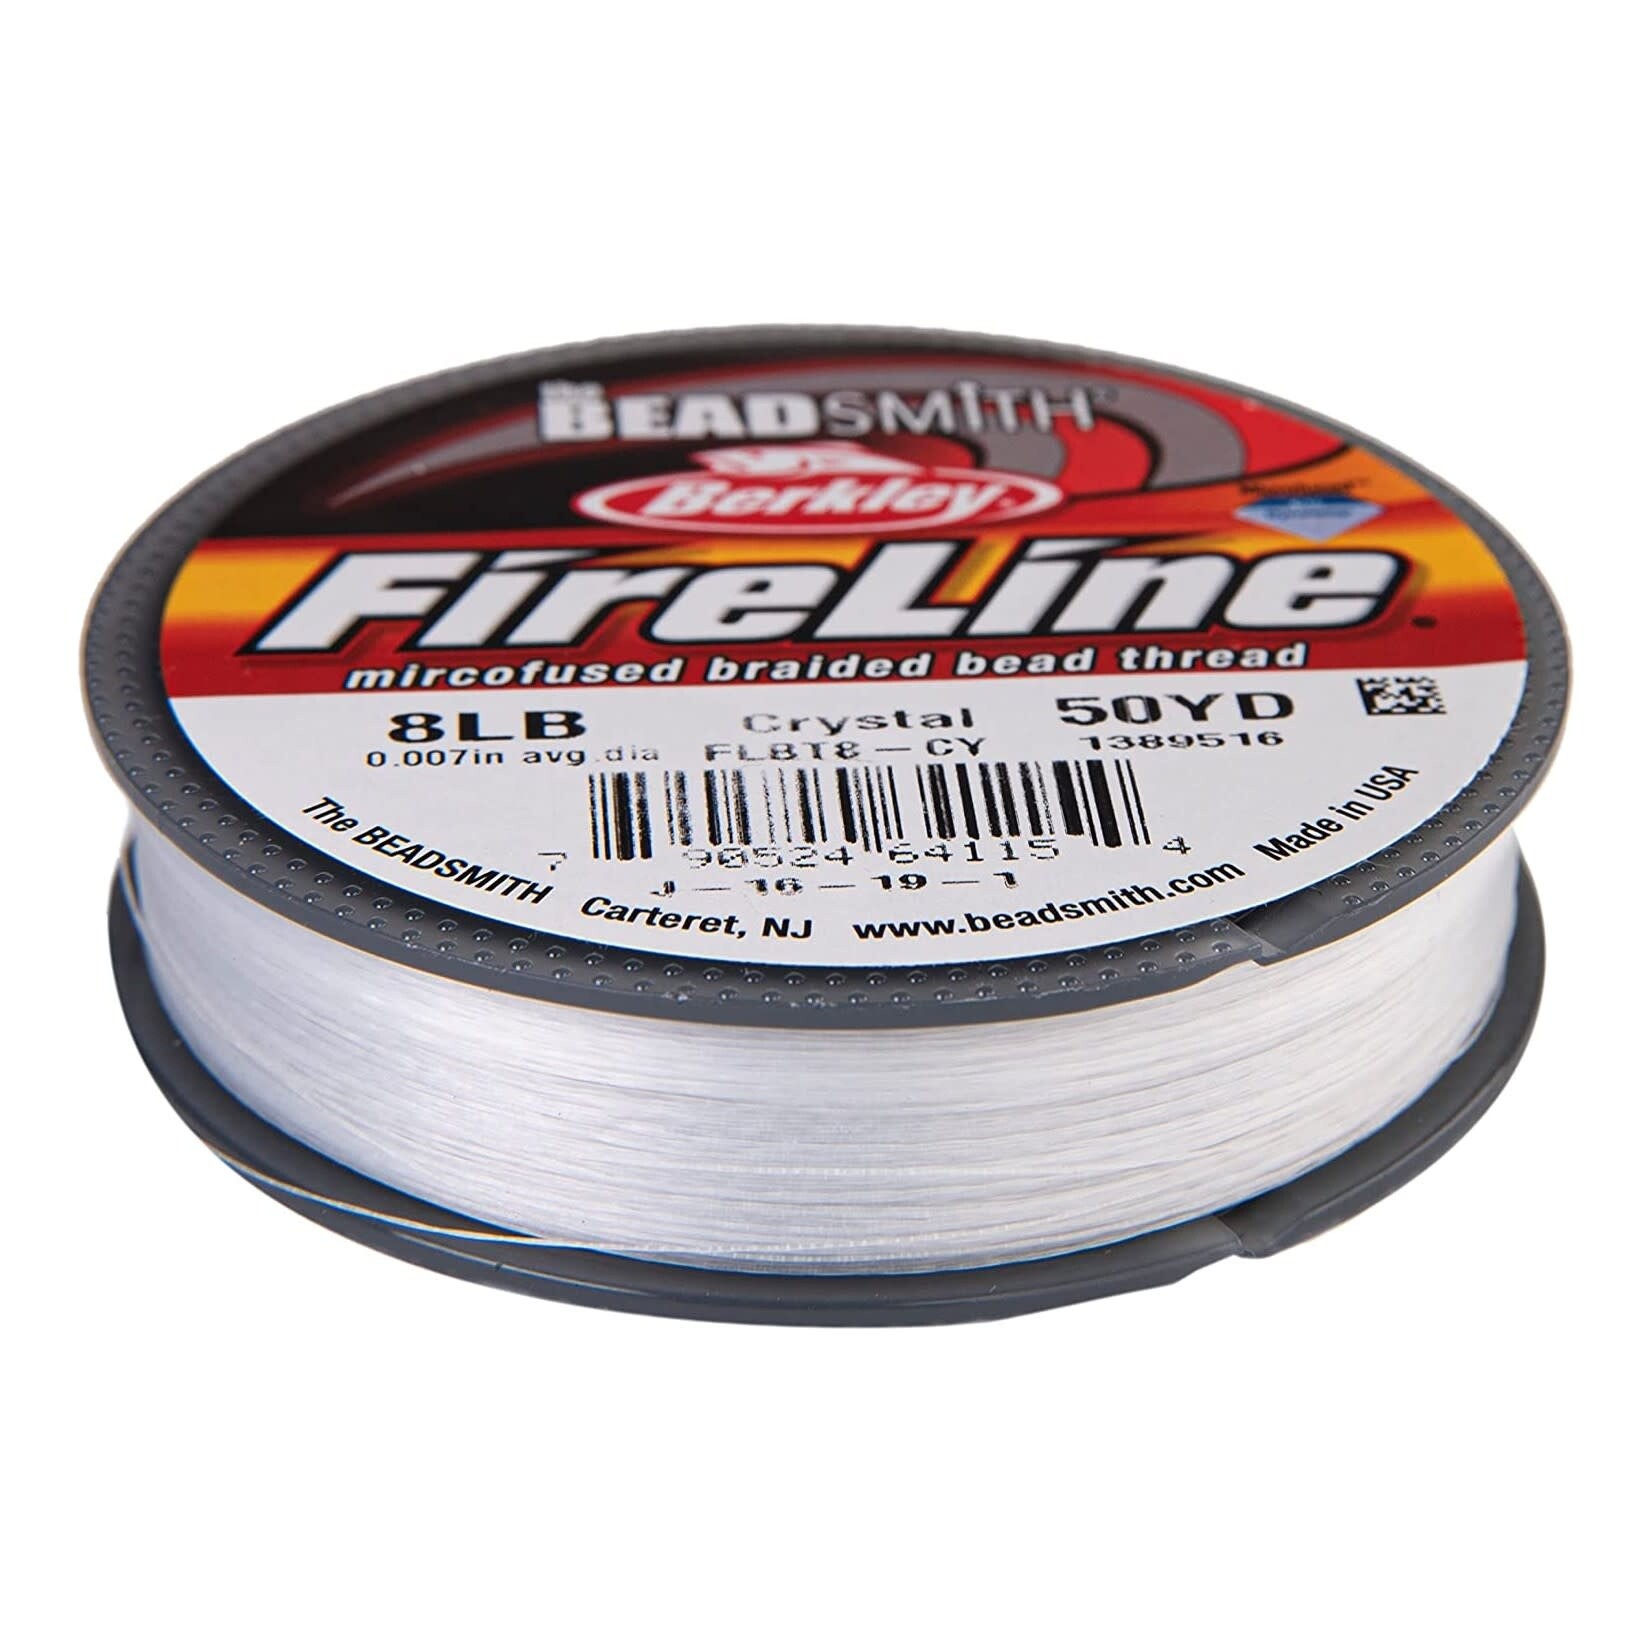 Fireline 8Lbs Crystal Clear - 50yd Spool